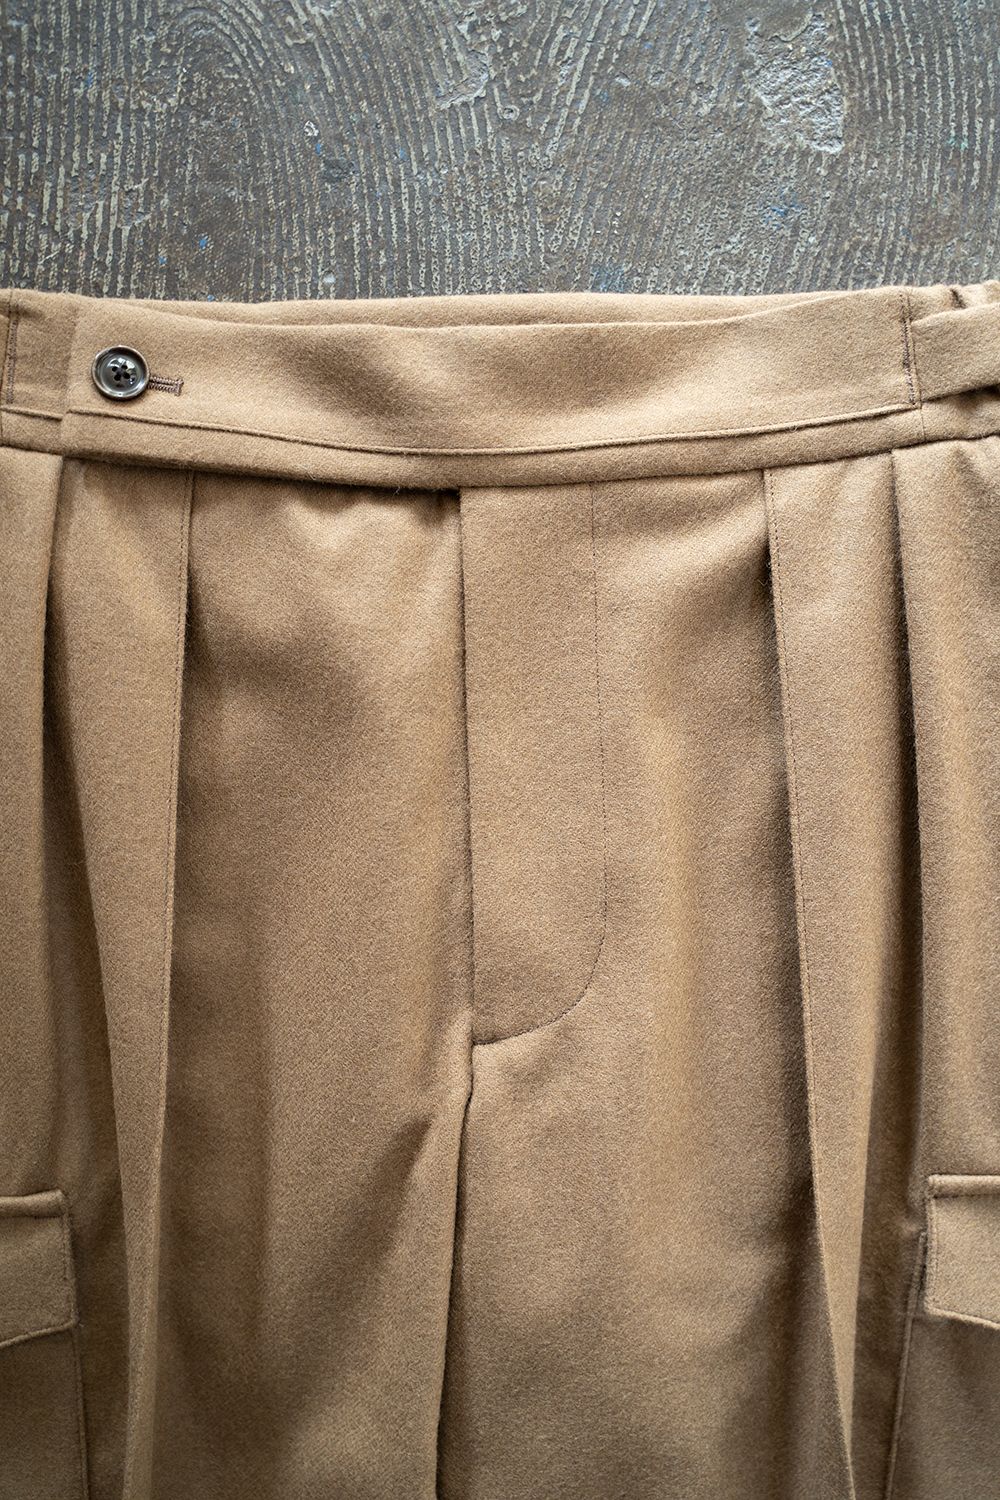 【ラスト1点】【22AW】2-Tack Flannel Cargo Pants/2タックフランネルカーゴパンツ(BEIGE) - 1